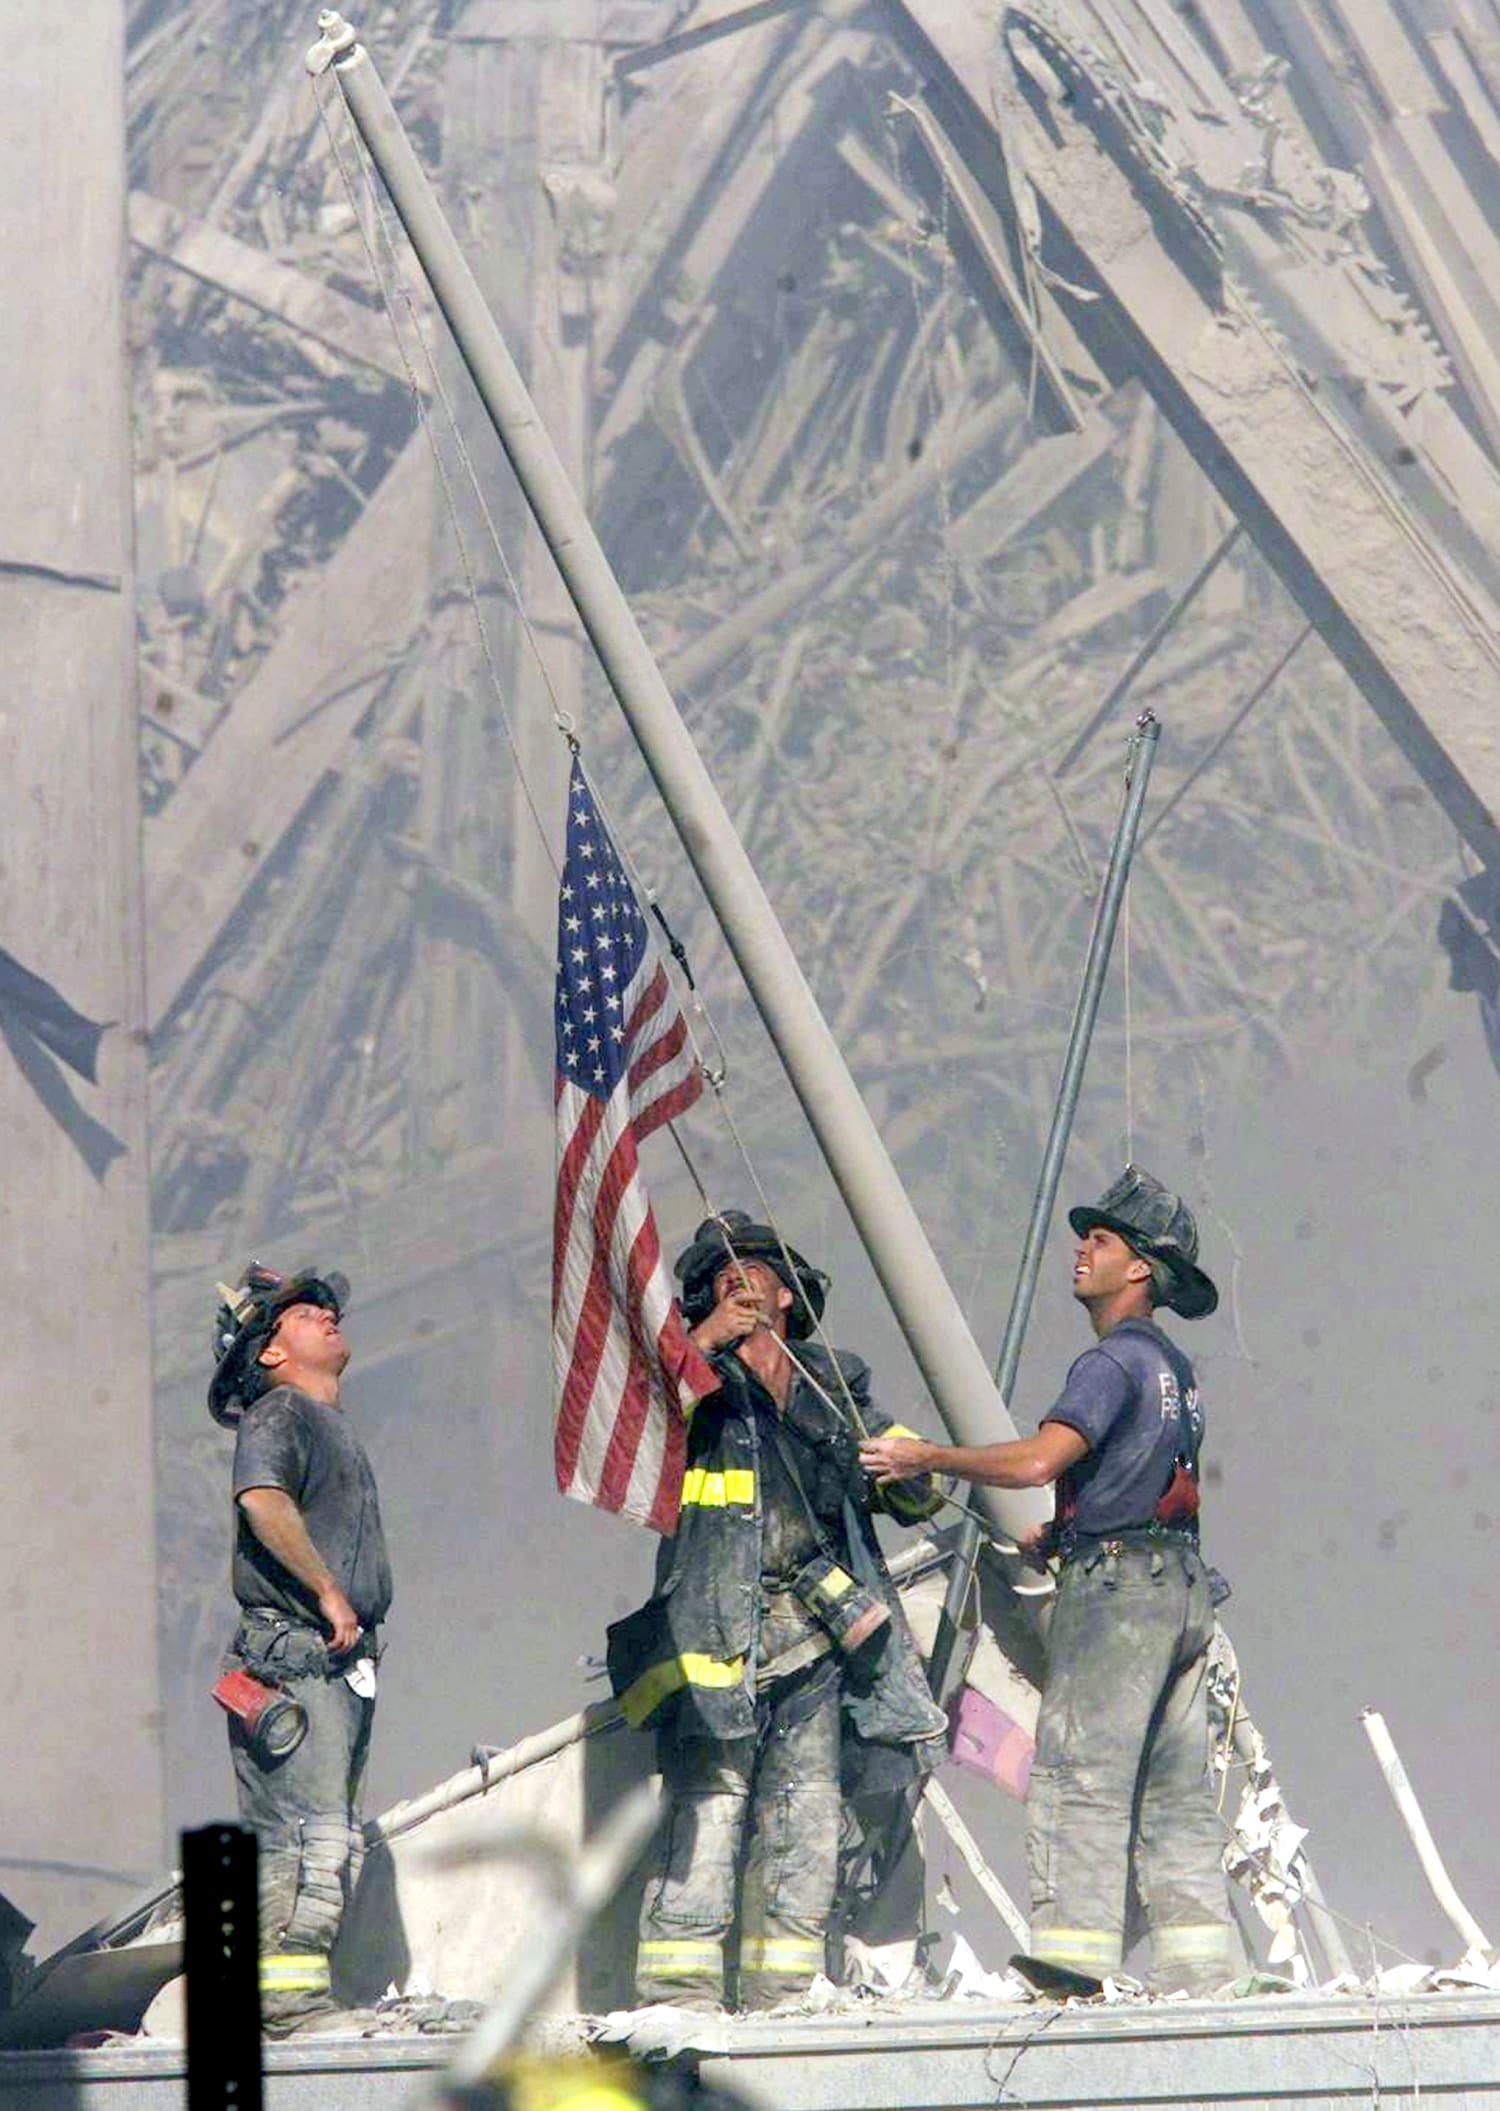 11 September September 11